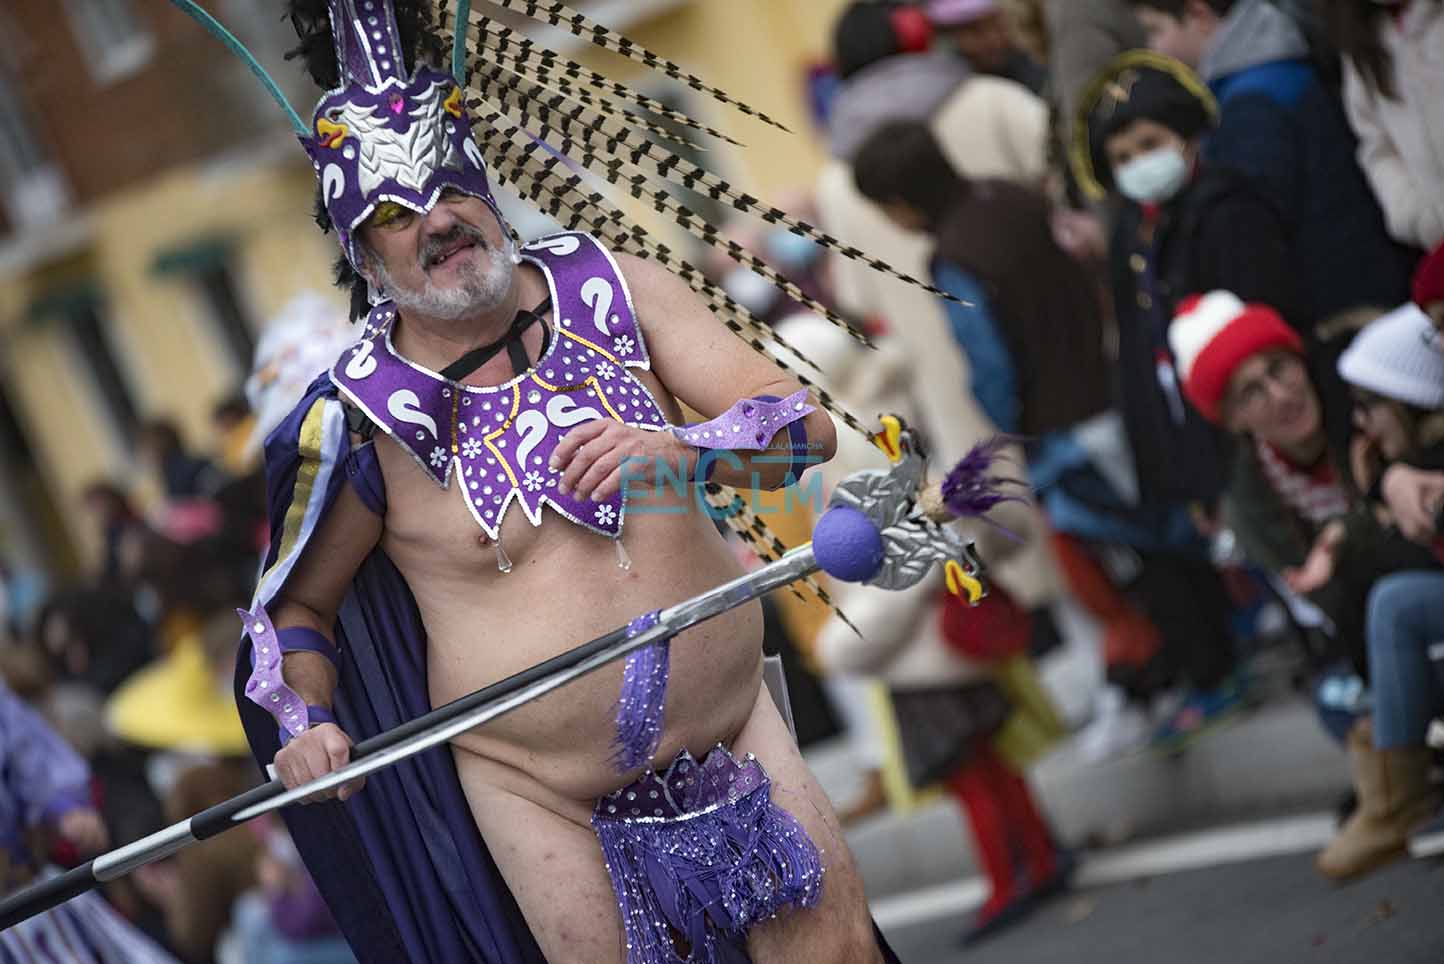 Este "disfraz", muy ligero de ropa por cierto, ha causado sensación en el Carnaval de Toledo. Foto: Rebeca Arango.